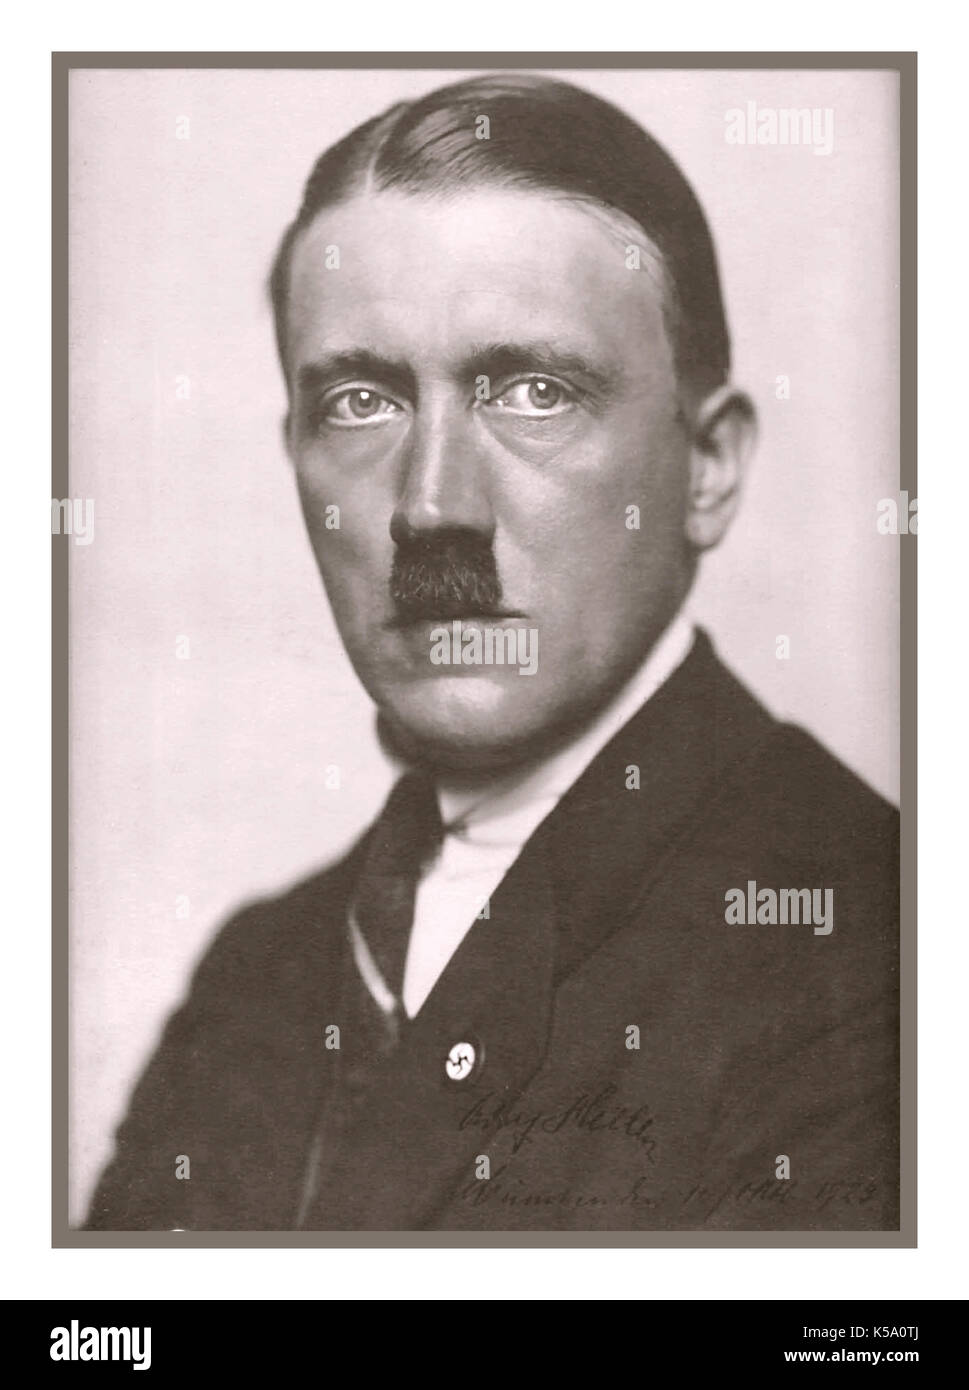 ADOLF HITLER STUDIO FORMALE RITRATTO 1920 B&W studio poste ritratto firmato datato fotografia di un politicamente immergendo Adolf Hitler Foto Stock